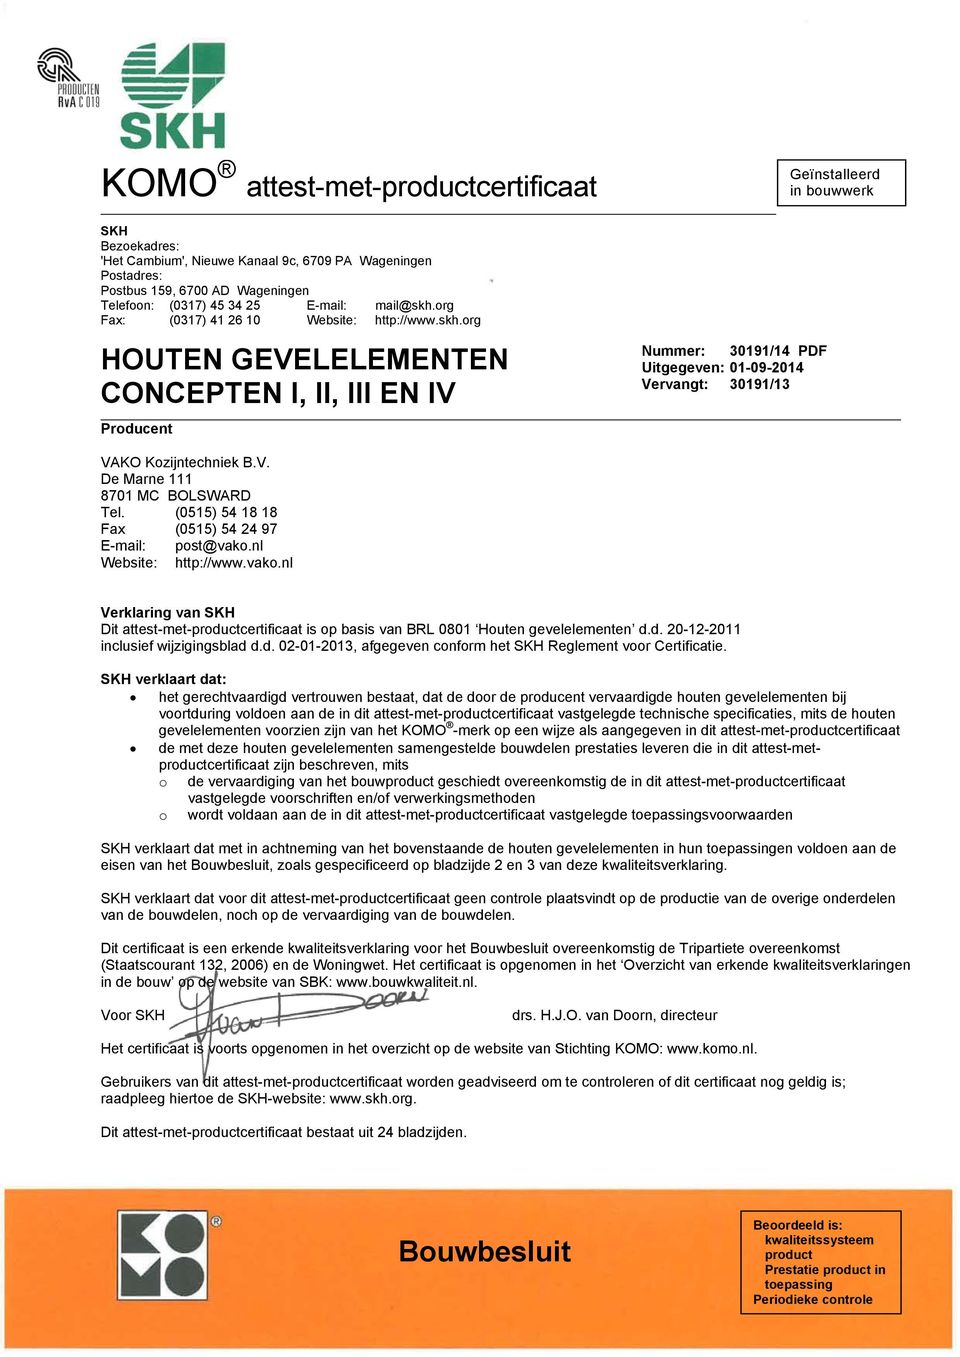 (0515) 54 18 18 Fax (0515) 54 24 97 E-mail: post@vako.nl Website: http://www.vako.nl Verklaring van SKH Dit attest-met-productcertificaat is op basis van BRL 0801 Houten gevelelementen d.d. 20-12-2011 inclusief wijzigingsblad d.